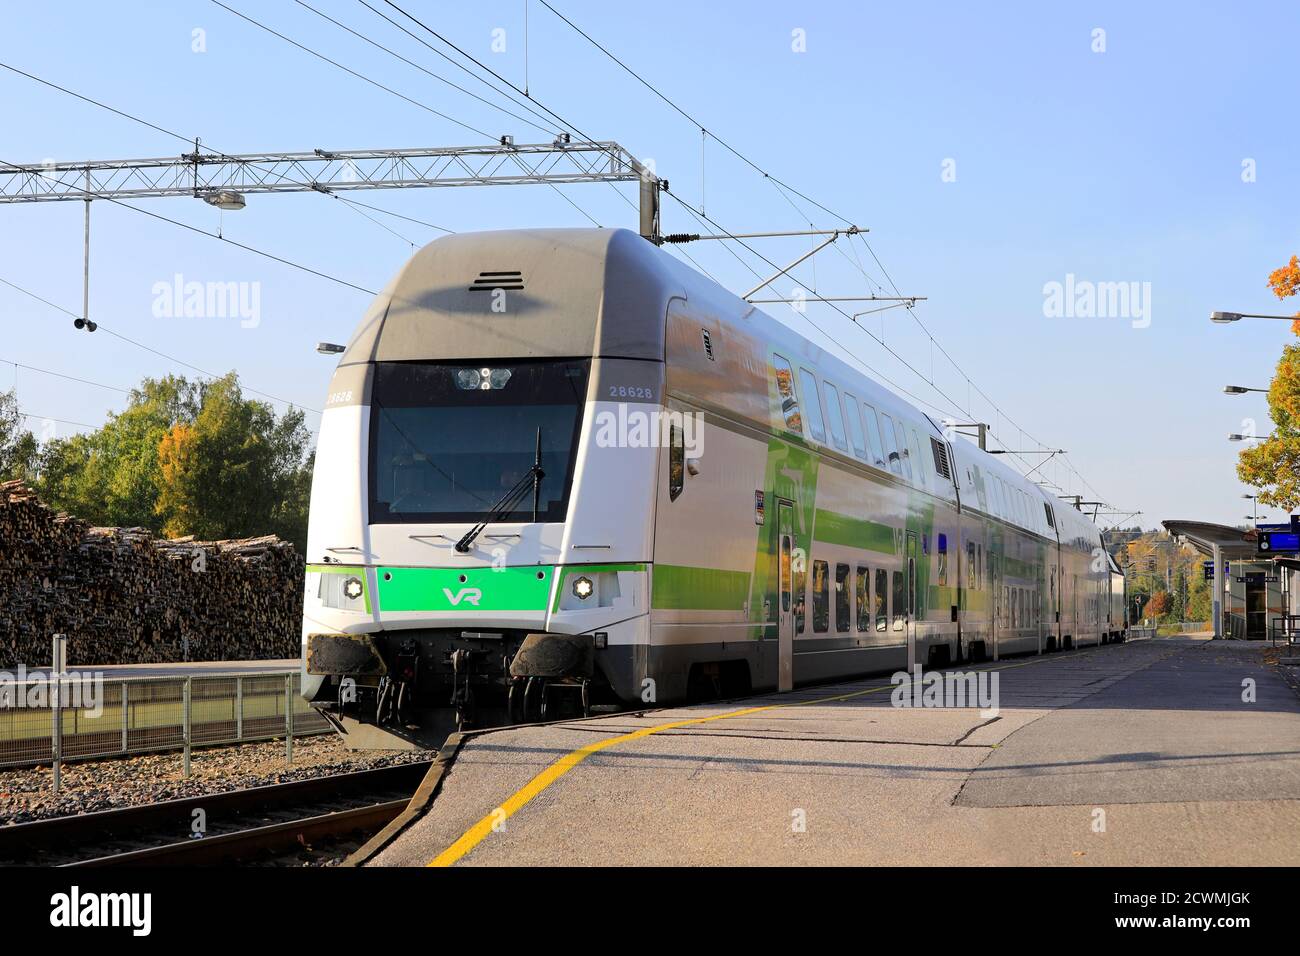 Moderne VR Group Intercity elektrische 2-stöckige Personenzug am Bahnhof Salo Plattform bereit zu verlassen. Salo, Finnland. September 27, 2020. Stockfoto